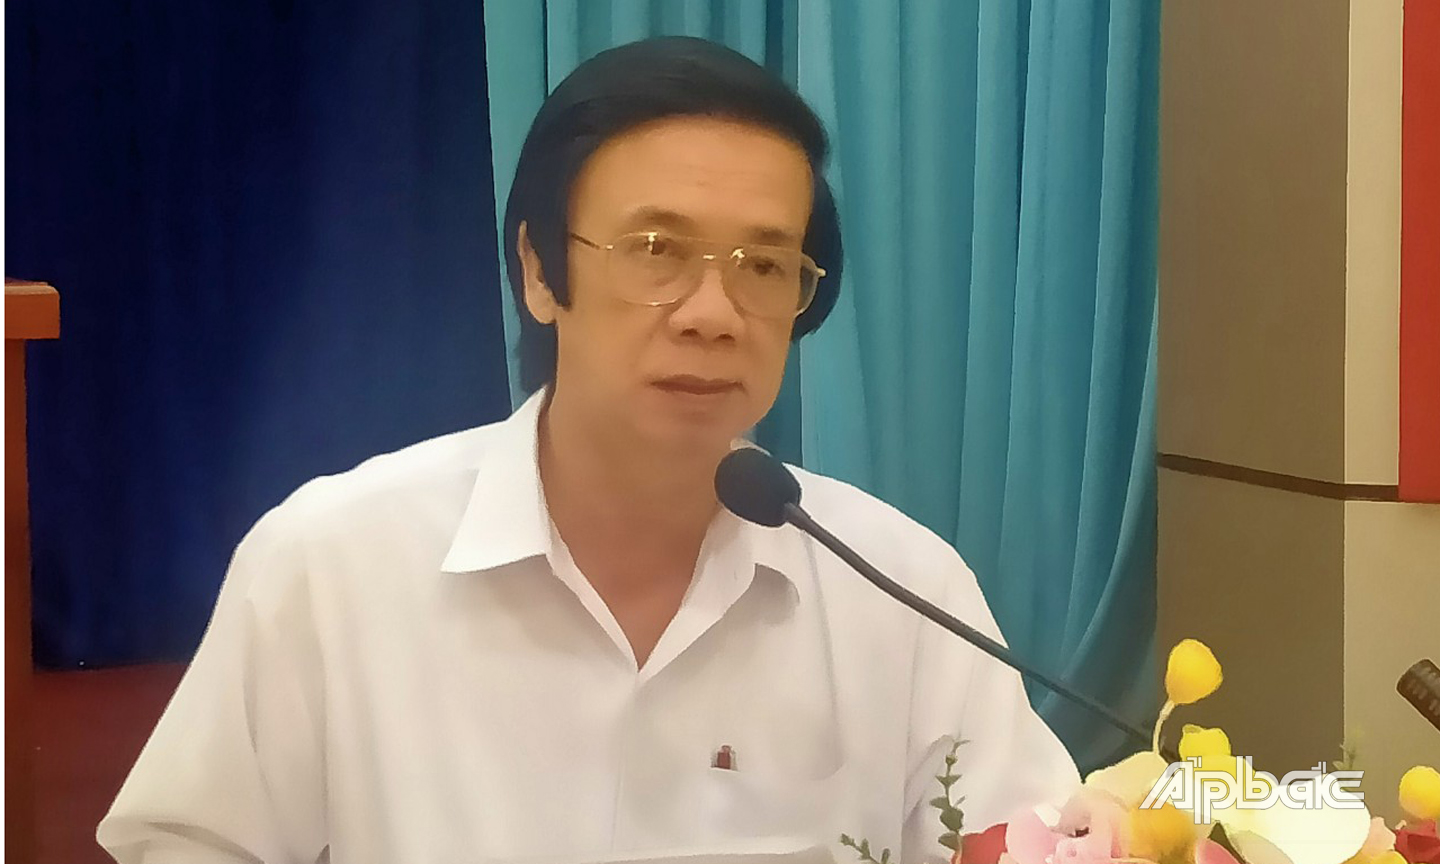 Đồng chí Nguyễn Văn Danh đánh giá cao nỗ lực của thành viên ủy ban bầu cử các cấp trong tỉnh, thời gian qua đã nỗ lực thực hiện tốt công tác chuẩn bị bầu cử theo đúng tiến độ và quy định